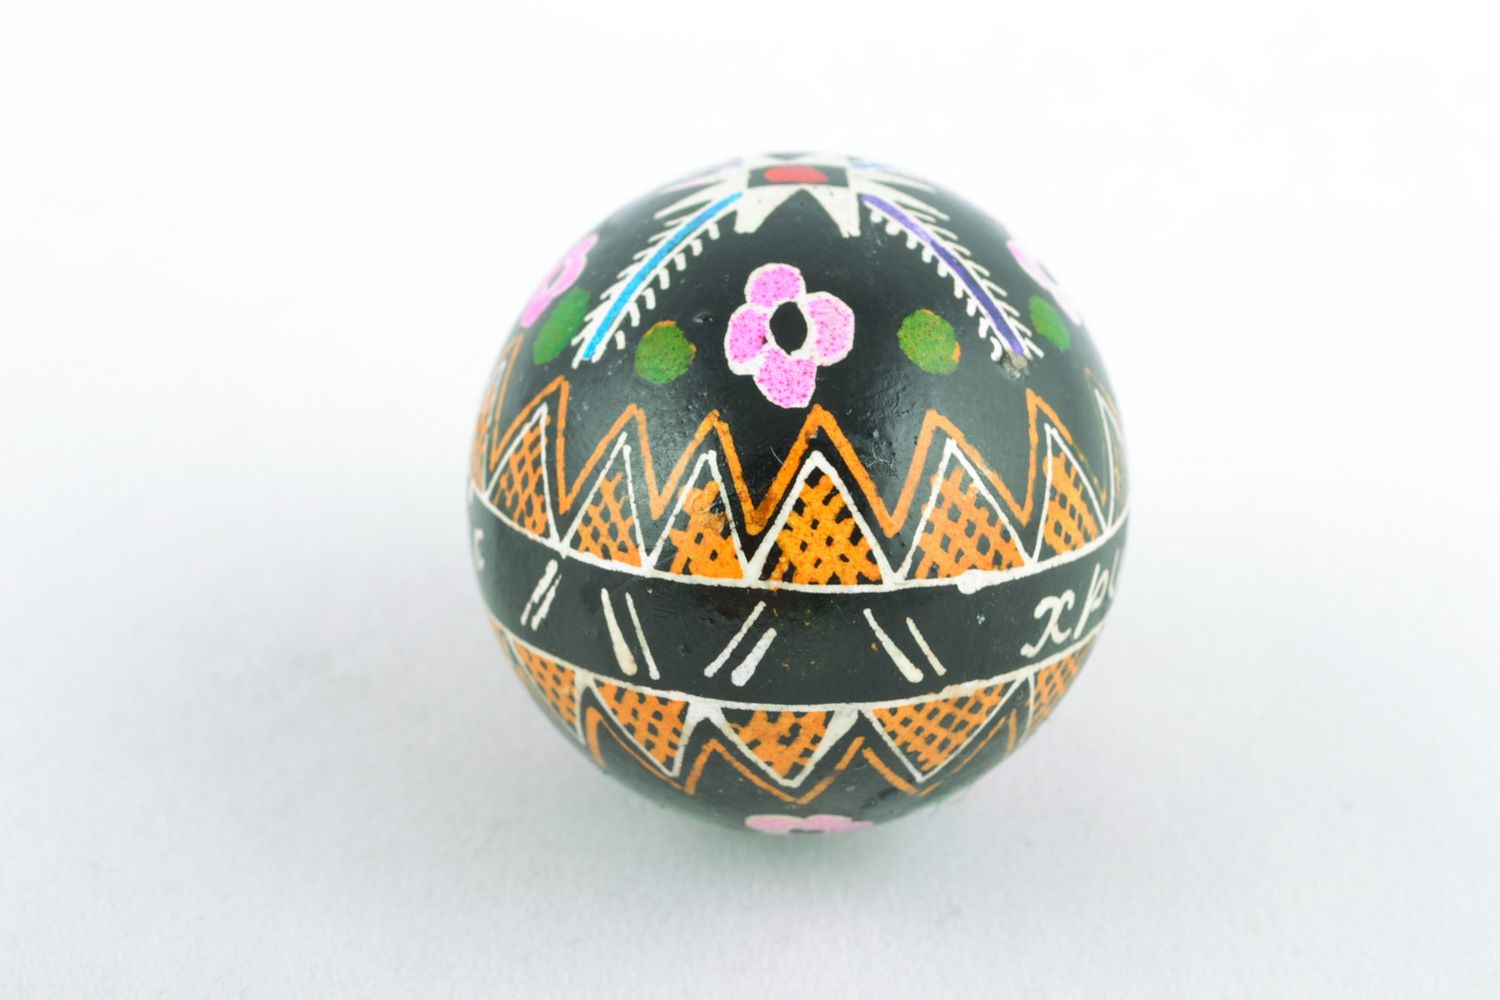 Расписное яйцо пасхальное в технике восковой росписи фото 4